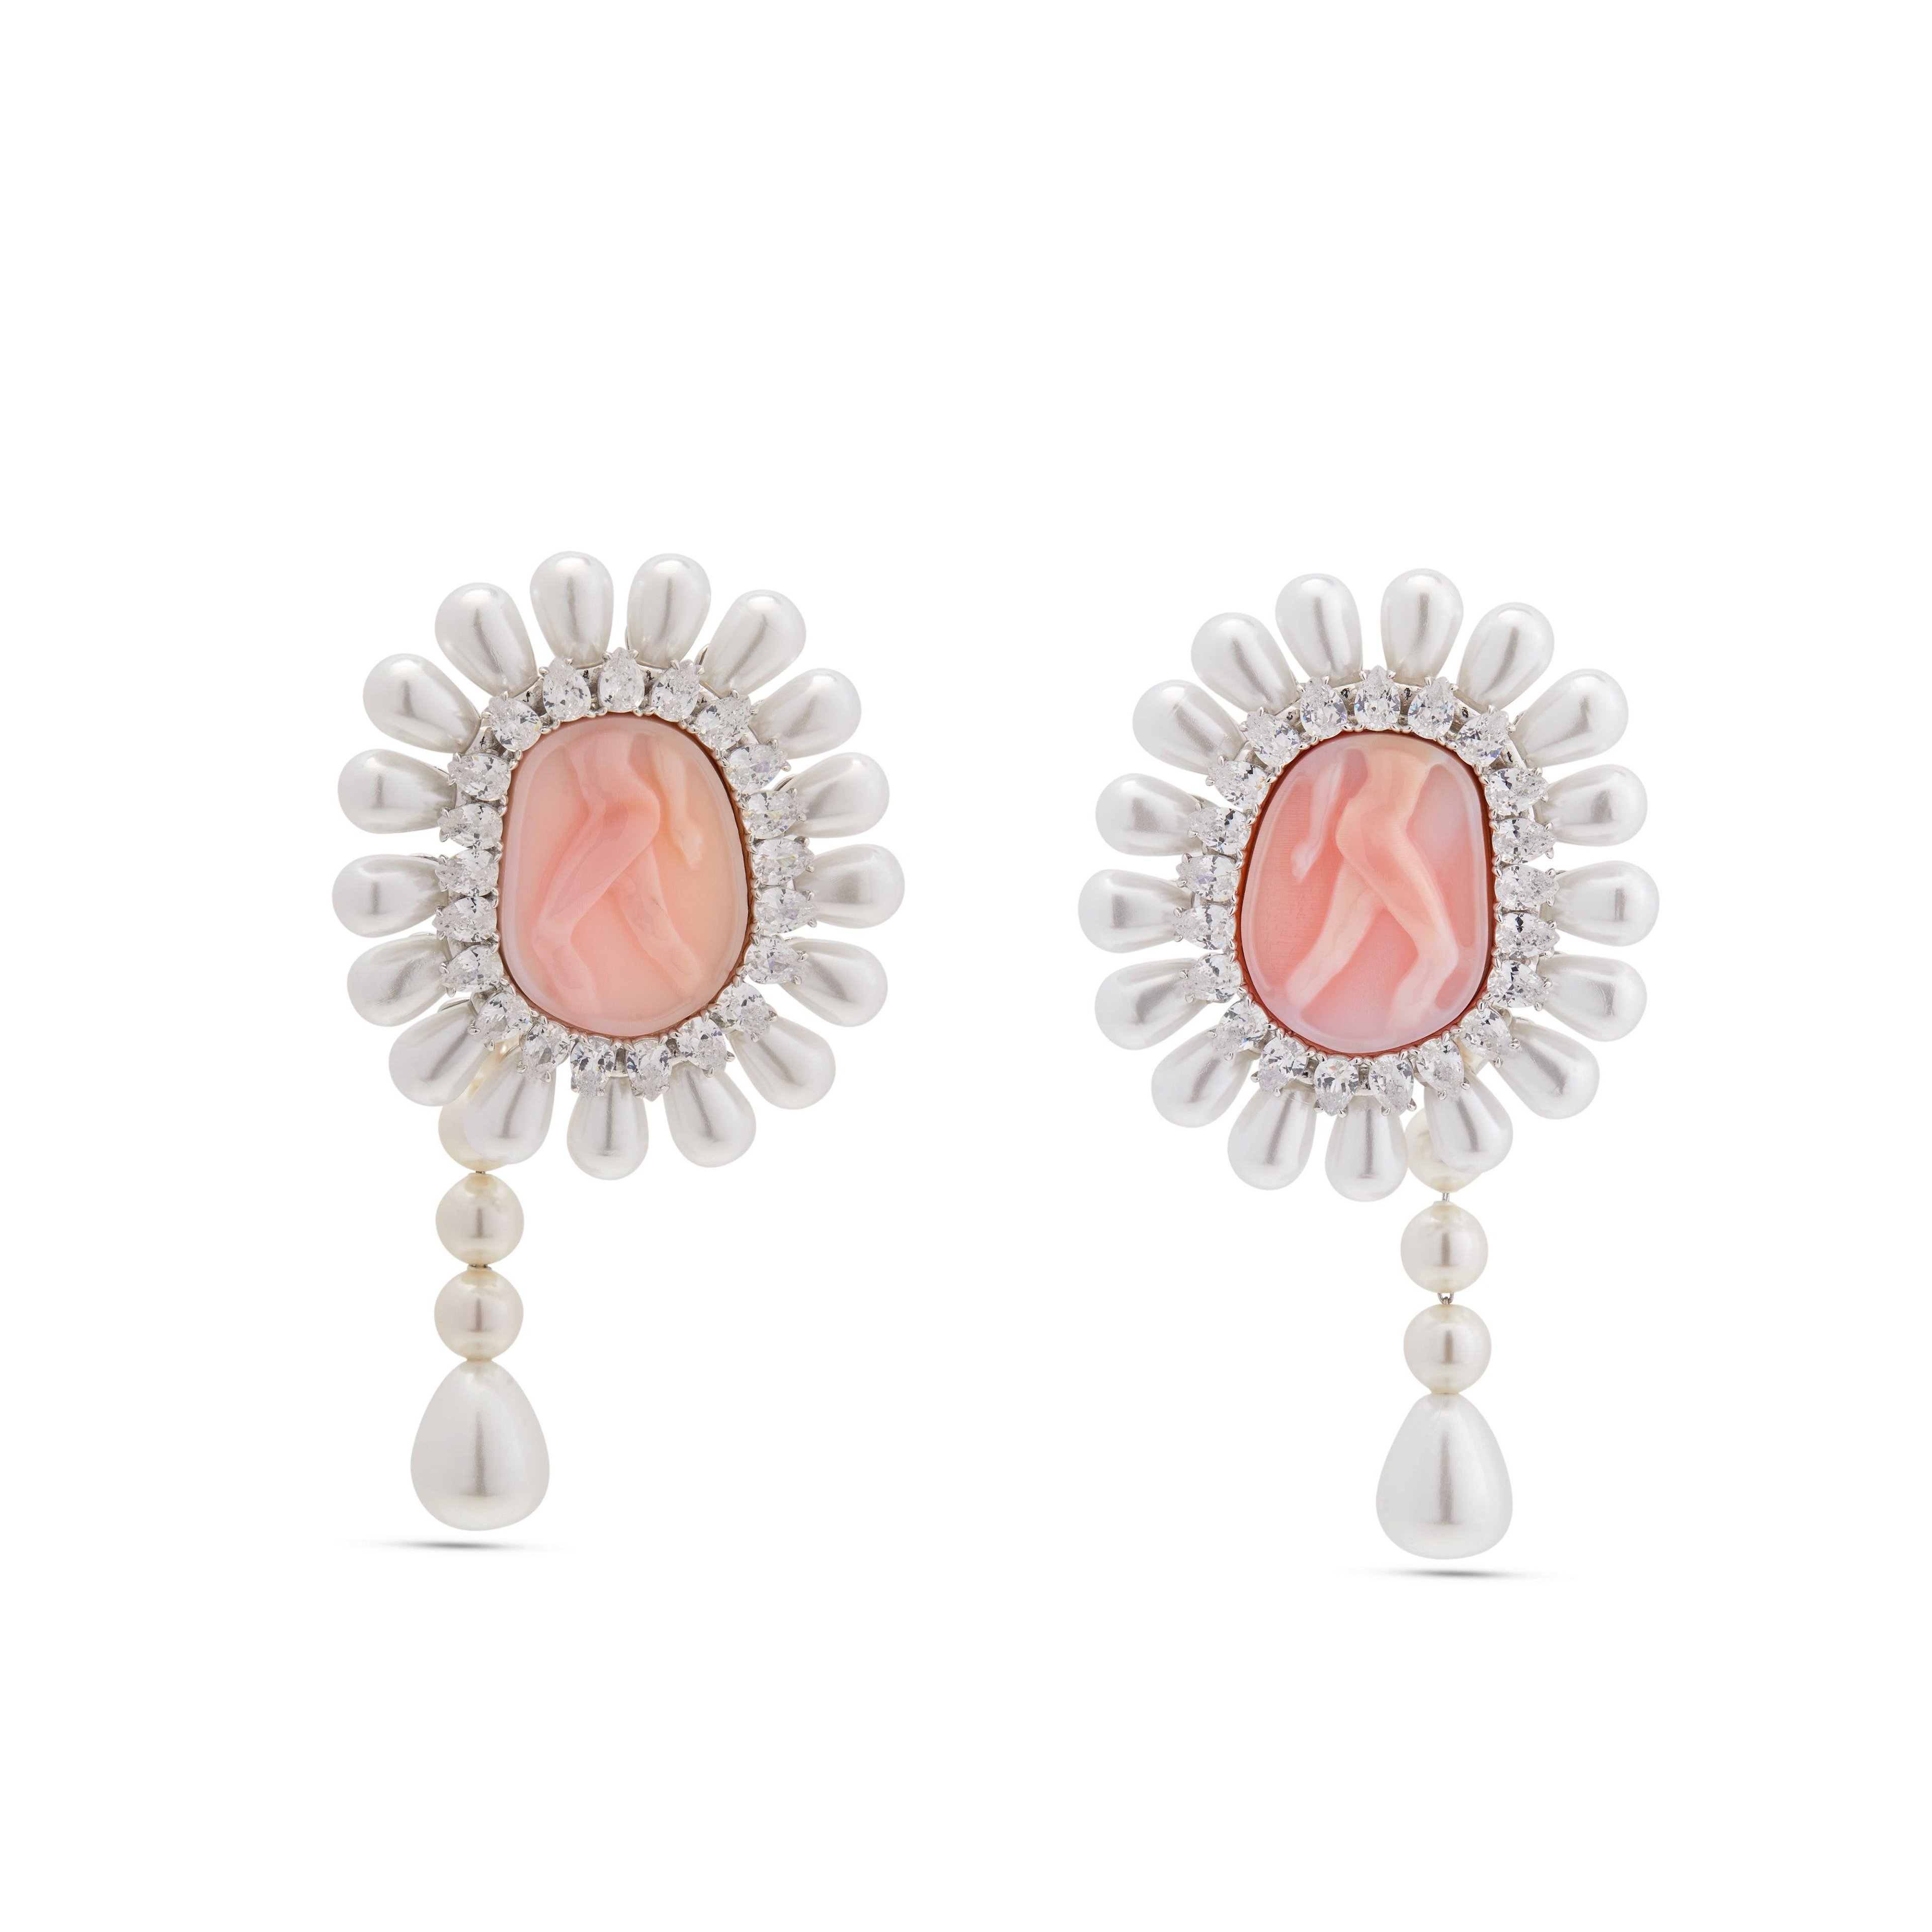 ShuShu/Tong - Women's Maiden Pearl Tassel Earrings - (Pink) by SHUSHU/TONG